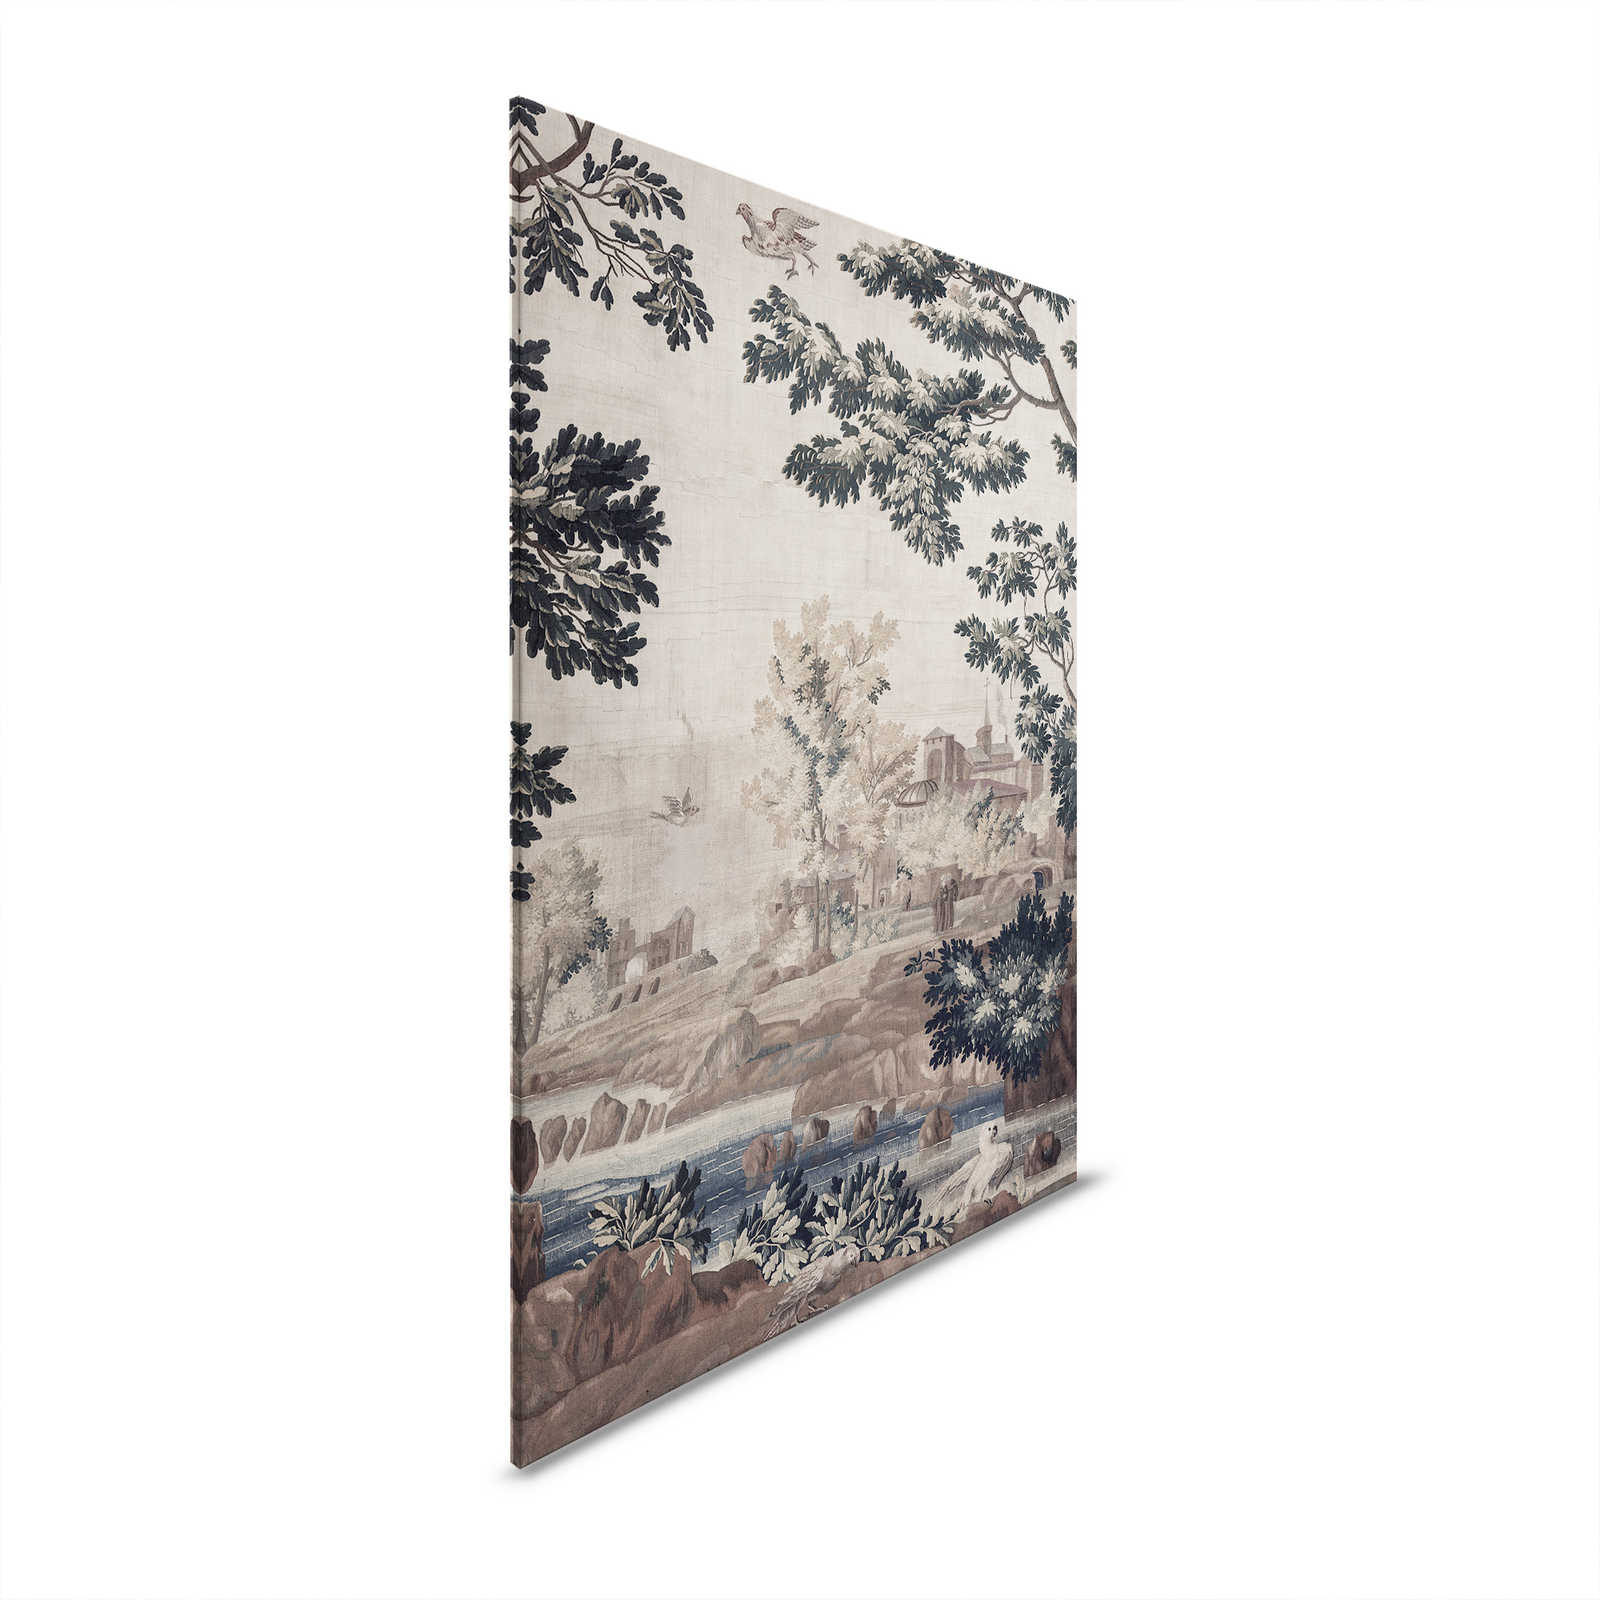 Gobelin Gallery 1 - Cuadro lienzo paisaje tapiz histórico - 1,20 m x 0,80 m
